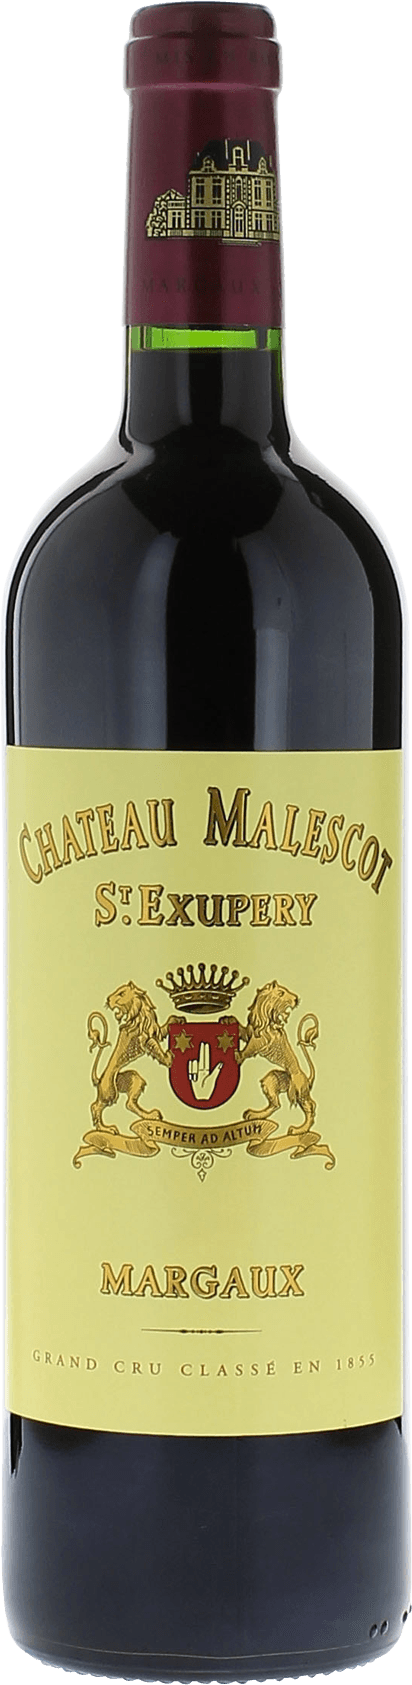 Malescot-saint-exupery  2016 3me Grand cru class Margaux, Bordeaux rouge